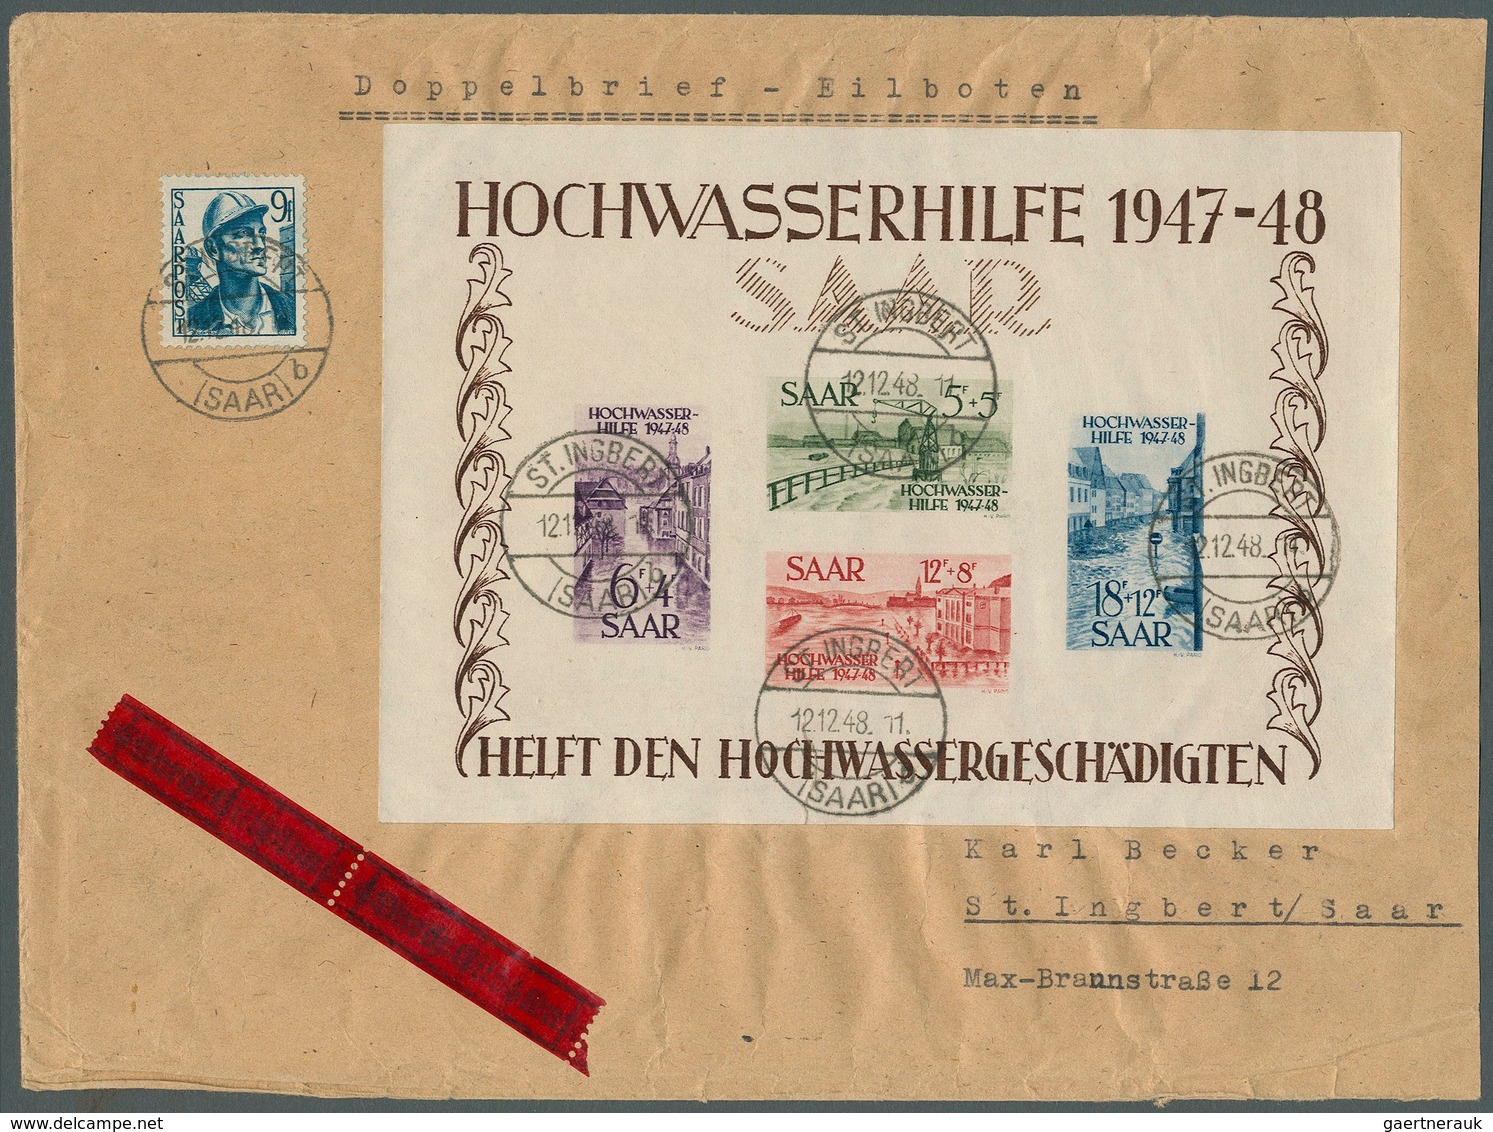 Saarland (1947/56): 1948, Block "Hochwasserhilfe", Blocktype I Auf Eilboten-Ortsbrief Mit Zusatzfran - Usati